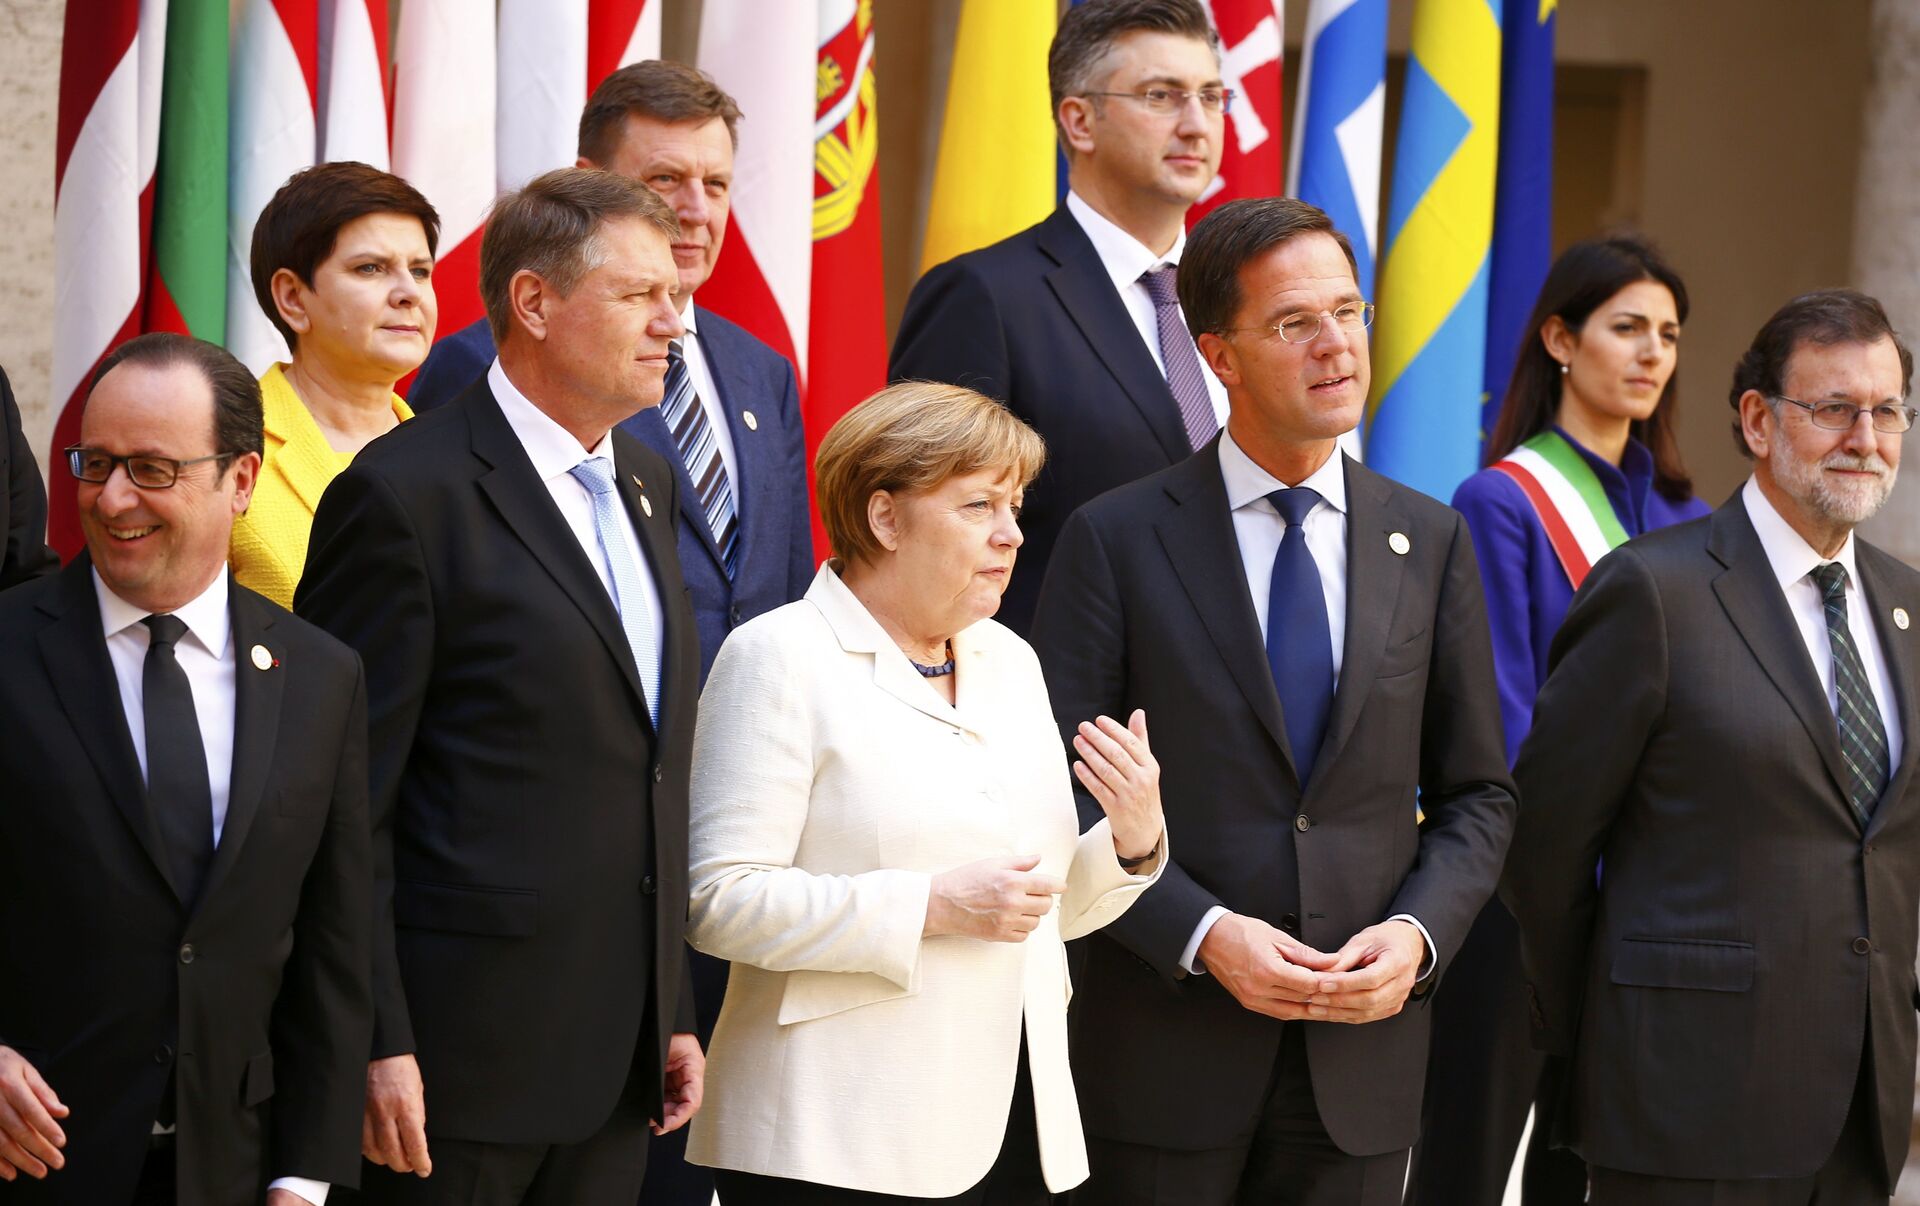 Западные европейцы. Лидеры Евросоюза. Главы государств ЕС. Политики Европы.